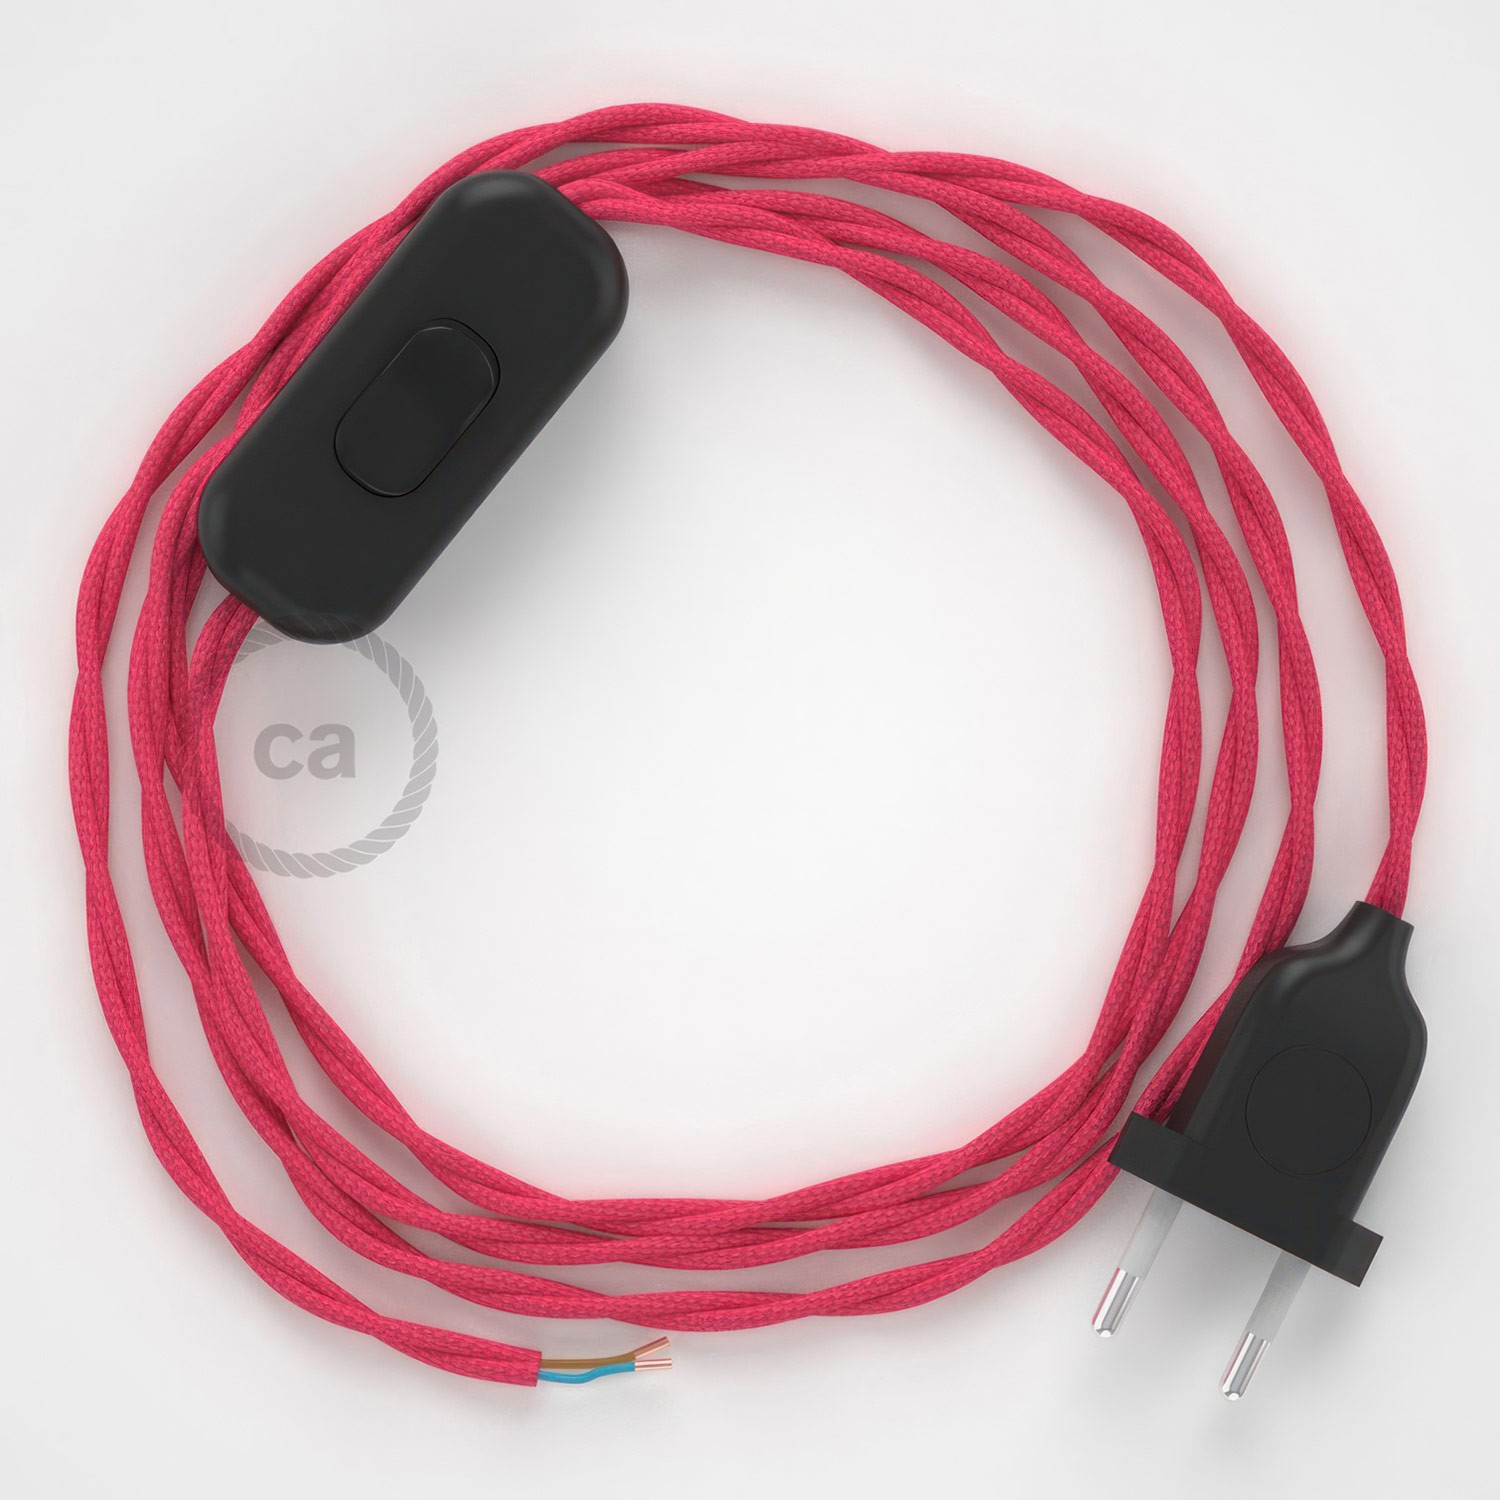 Cableado para lámpara, cable TM08 Efecto Seda Fuchsia 1,8m. Elige tu el color de la clavija y del interruptor!